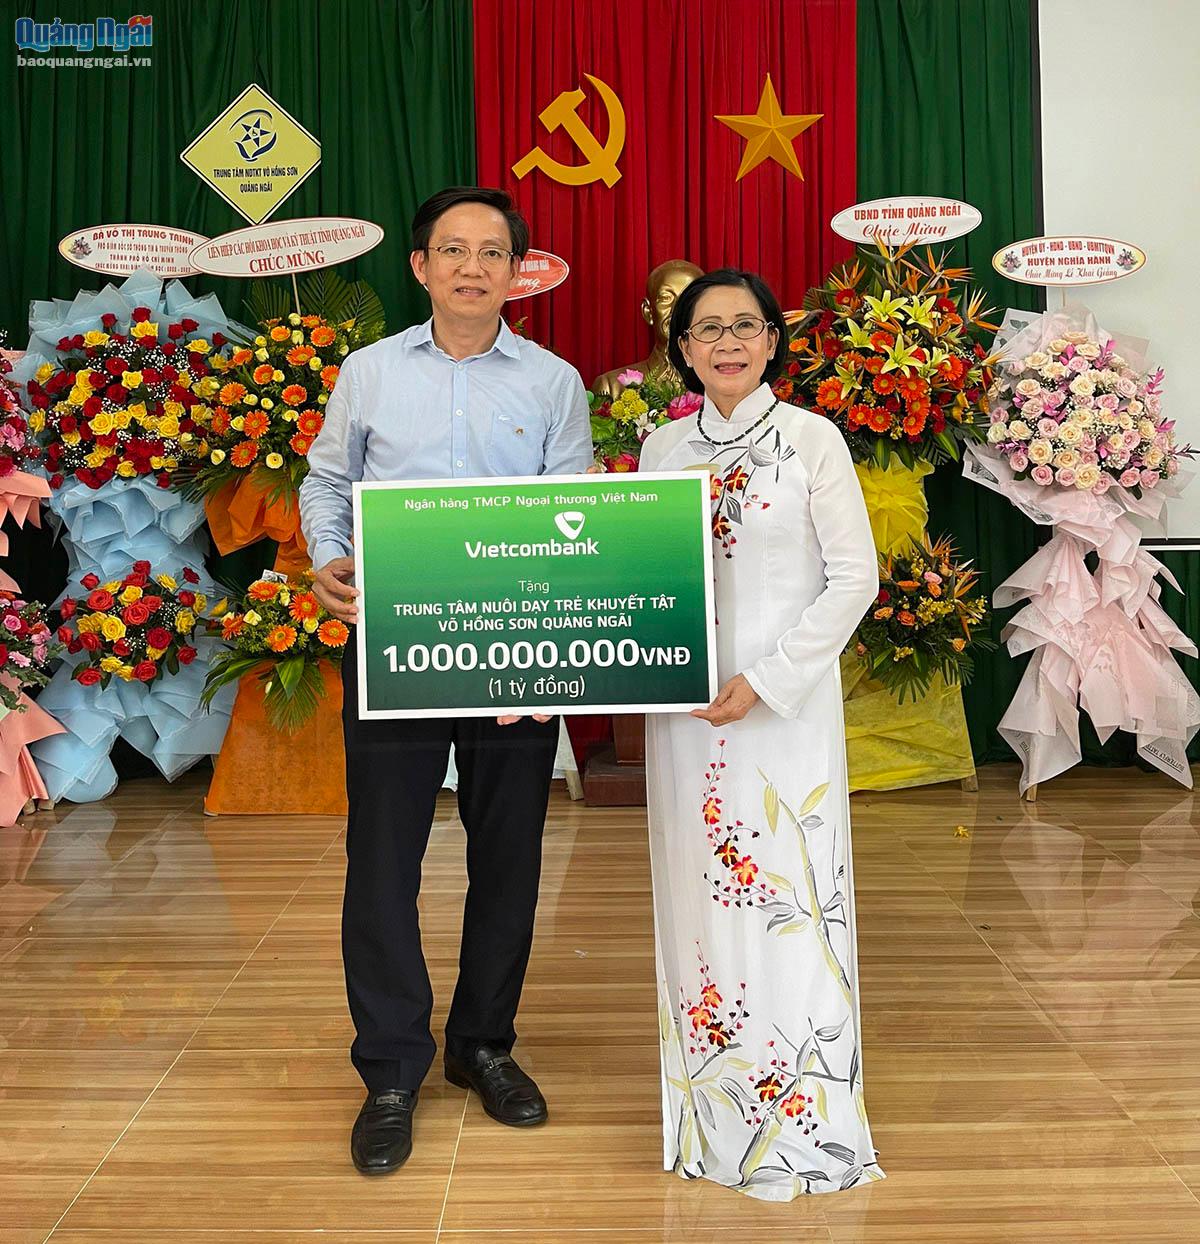 Ngân hàng TMCP Ngoại thương Việt Nam hỗ trợ Trung Nuôi dạy trẻ khuyết tật Võ Hồng Sơn 1 tỉ đồng